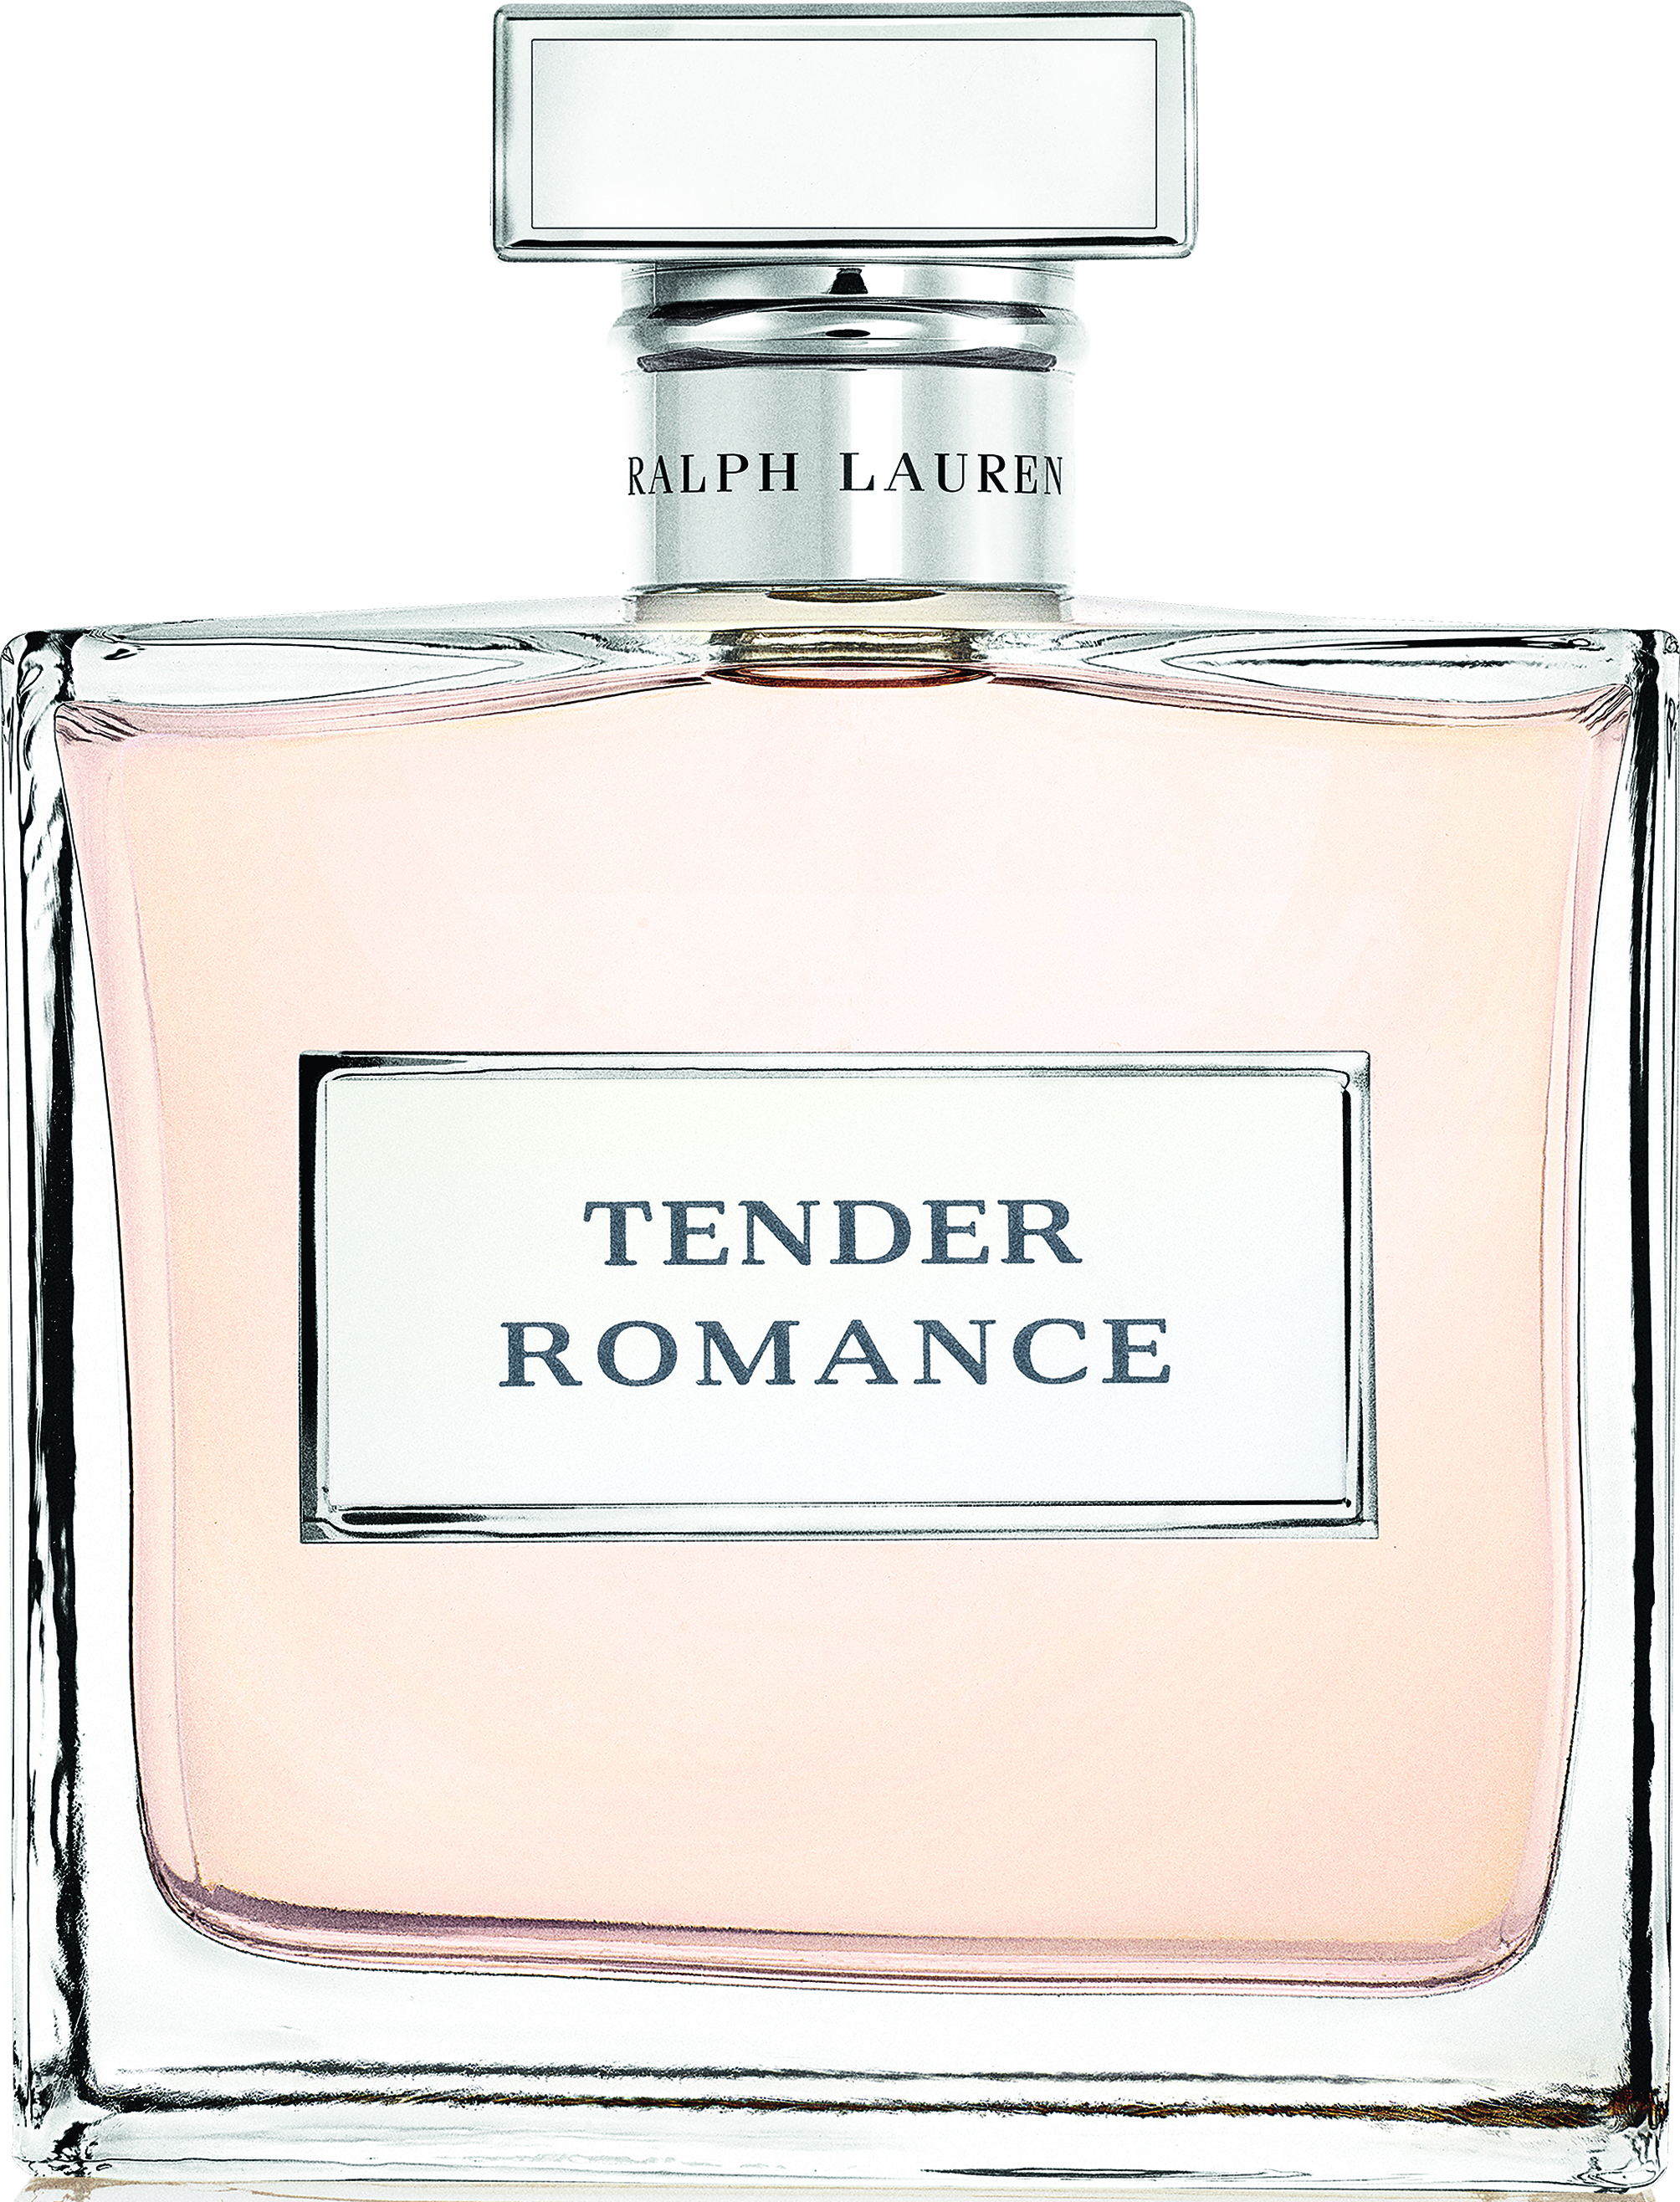 tender romance ralph lauren 50 ml